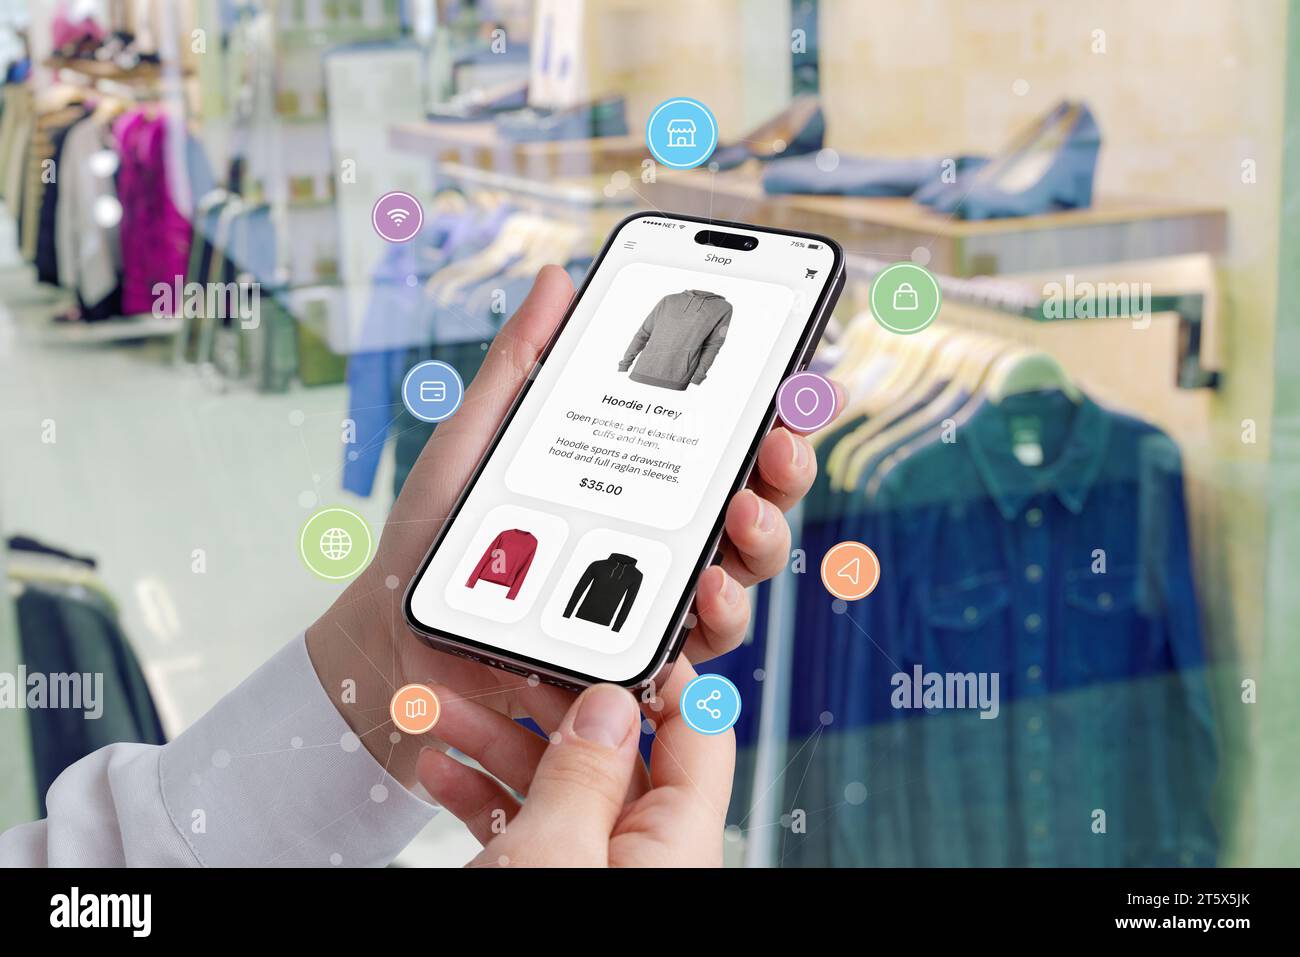 Les mains des femmes tiennent un smartphone avec une application shopping entourée d'icônes de shopping, tandis qu'une boutique présente des vêtements en arrière-plan Banque D'Images